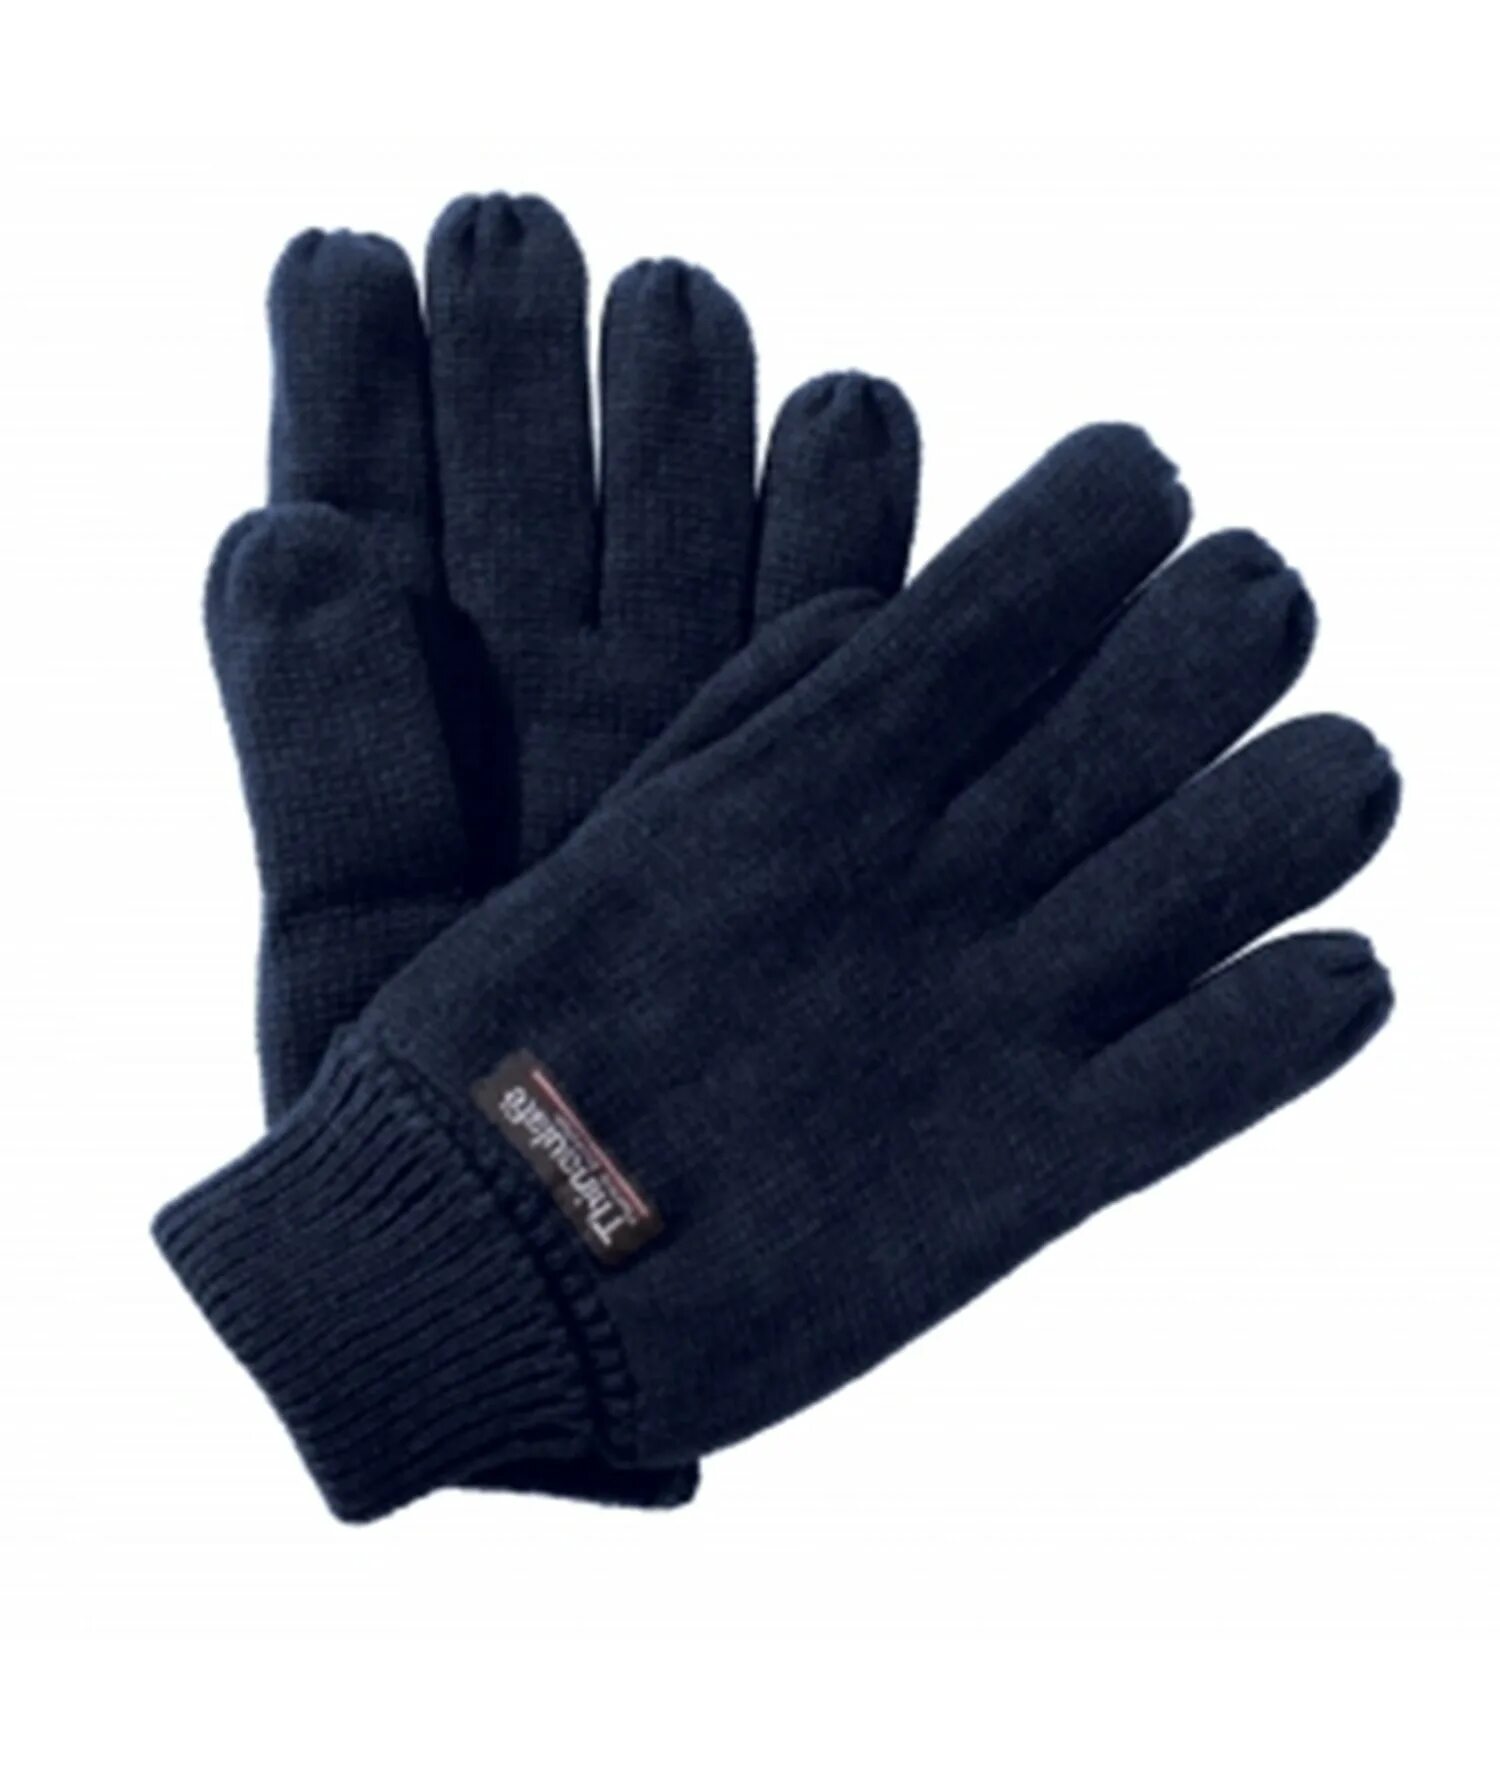 Куплю теплые перчатки. Перчатки 3m Thinsulate. Thinsulate 3m перчатки высокие. Варежки 3m Thinsulate. Перчатки зимние флисовые 3m Thinsulate.